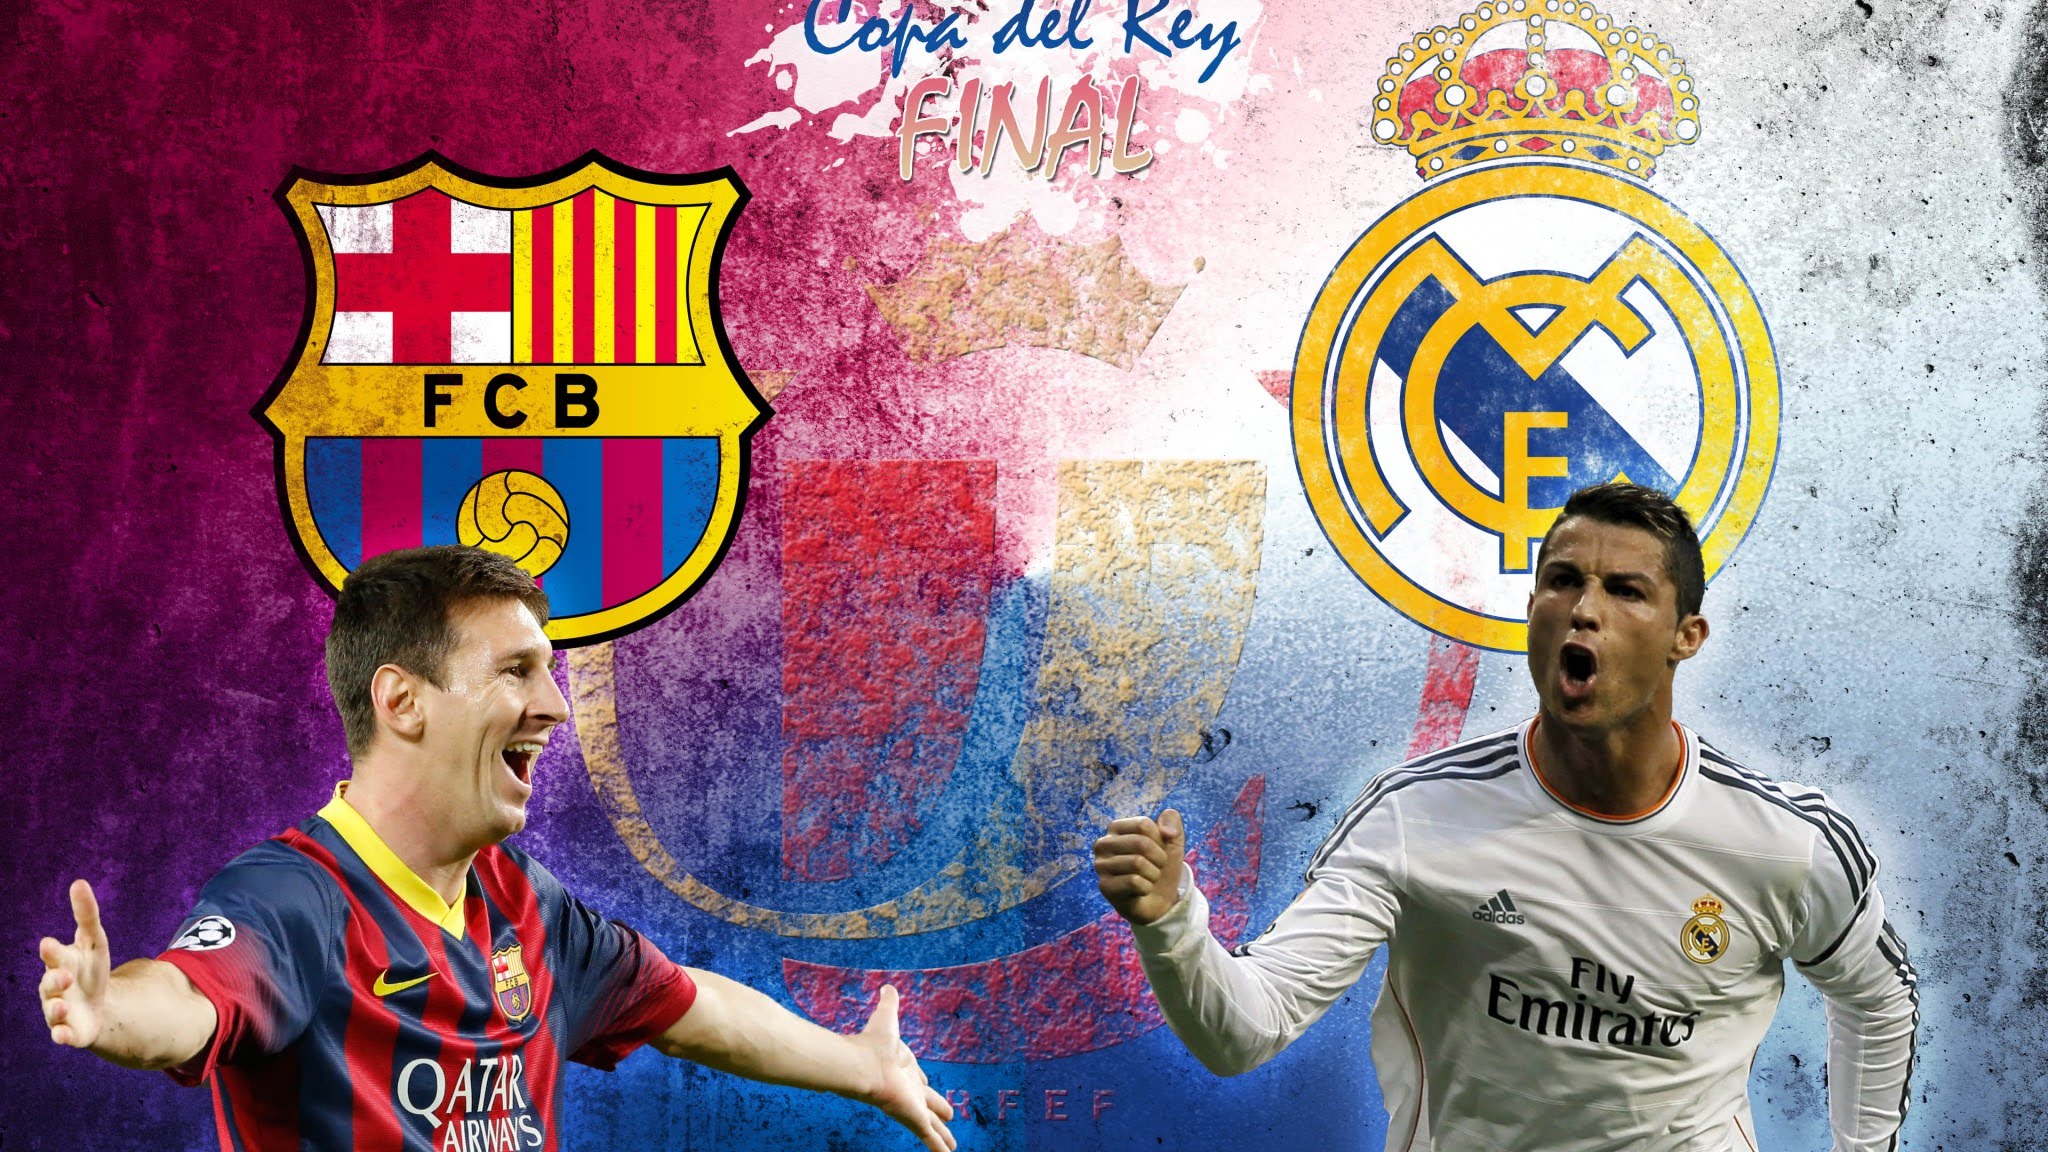 Messi Vs Ronaldo 2015 Wallpaper - WallpaperSafari